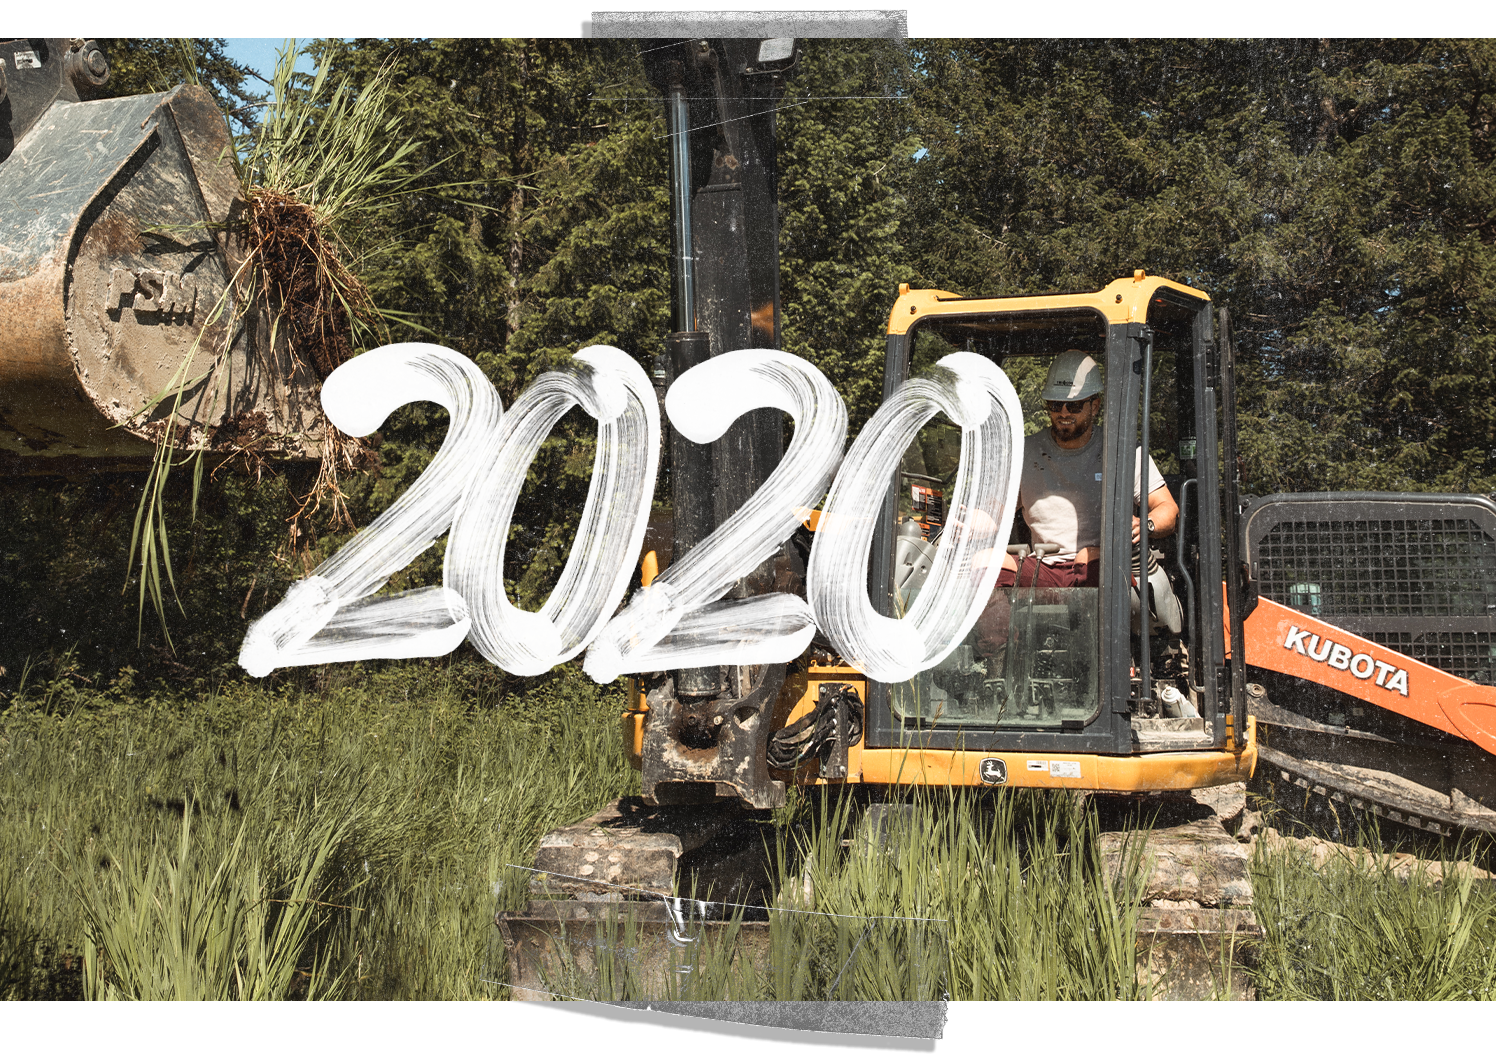 2020 - FNF Expansion